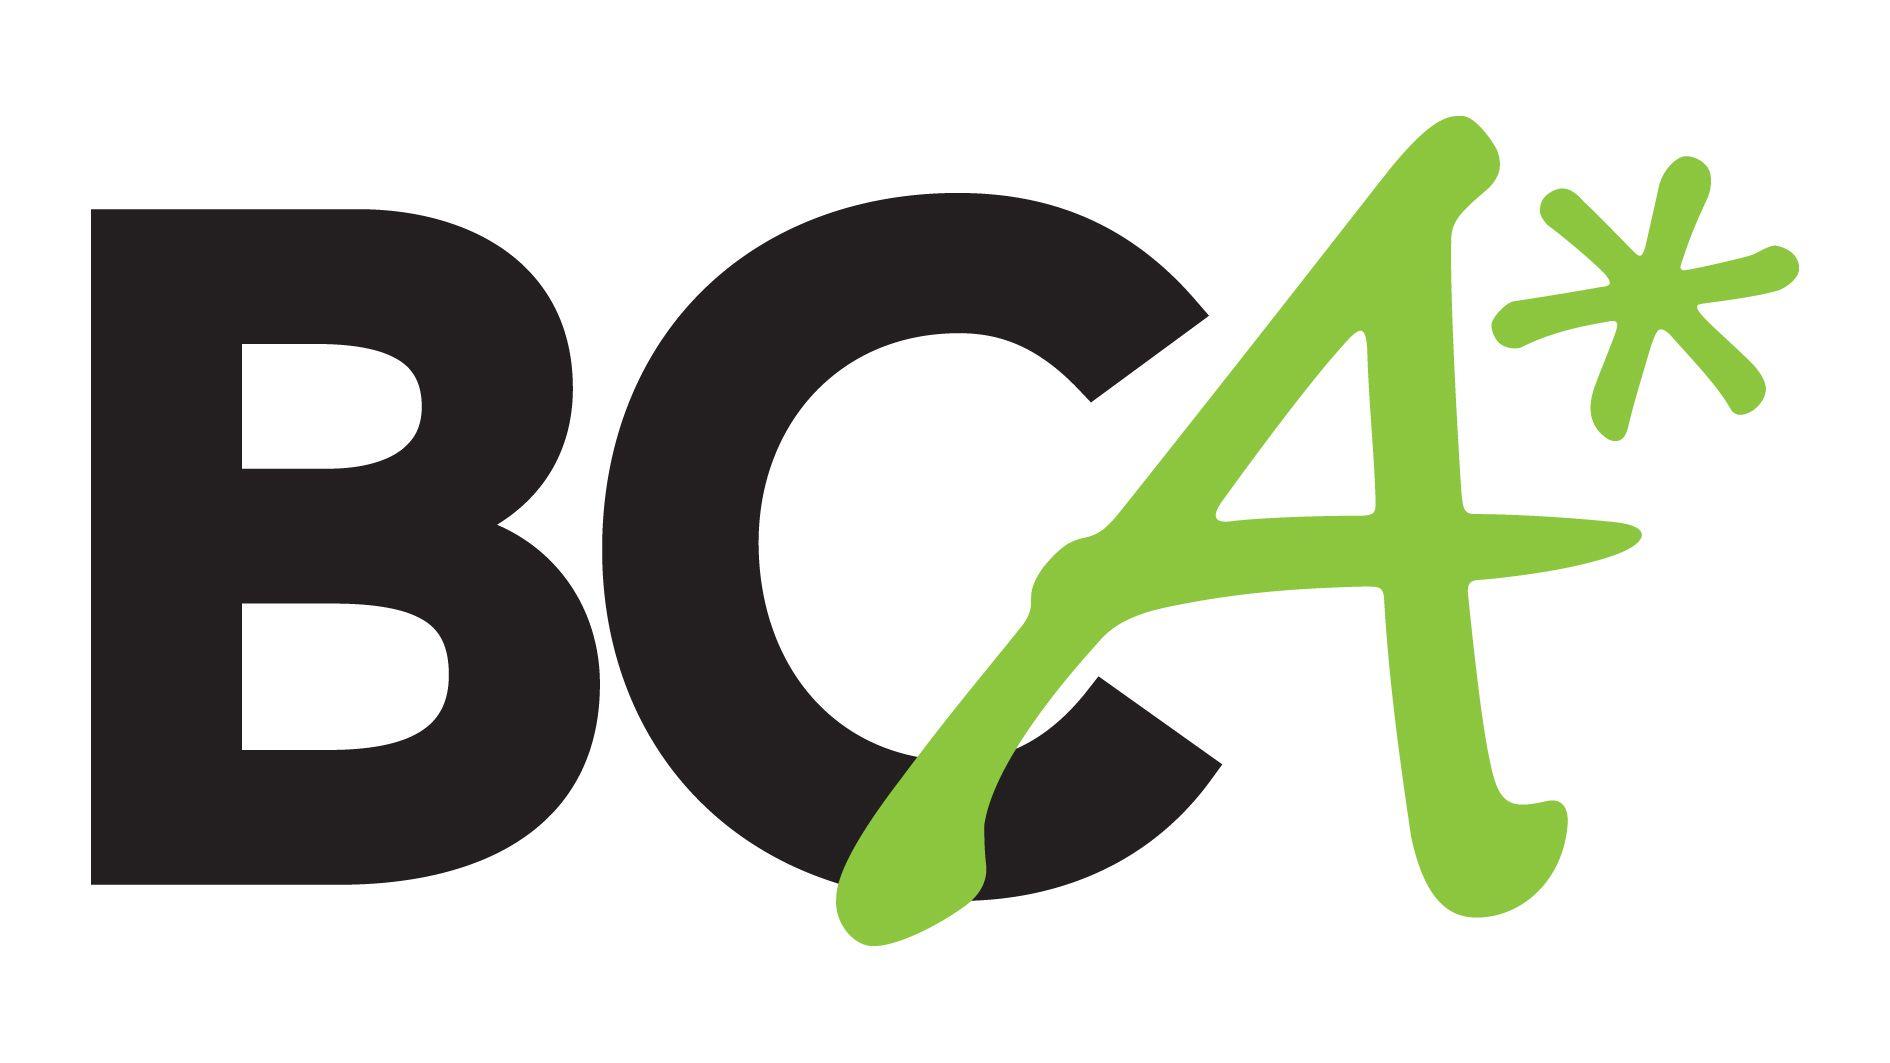 BCA Logo - Bca Logos